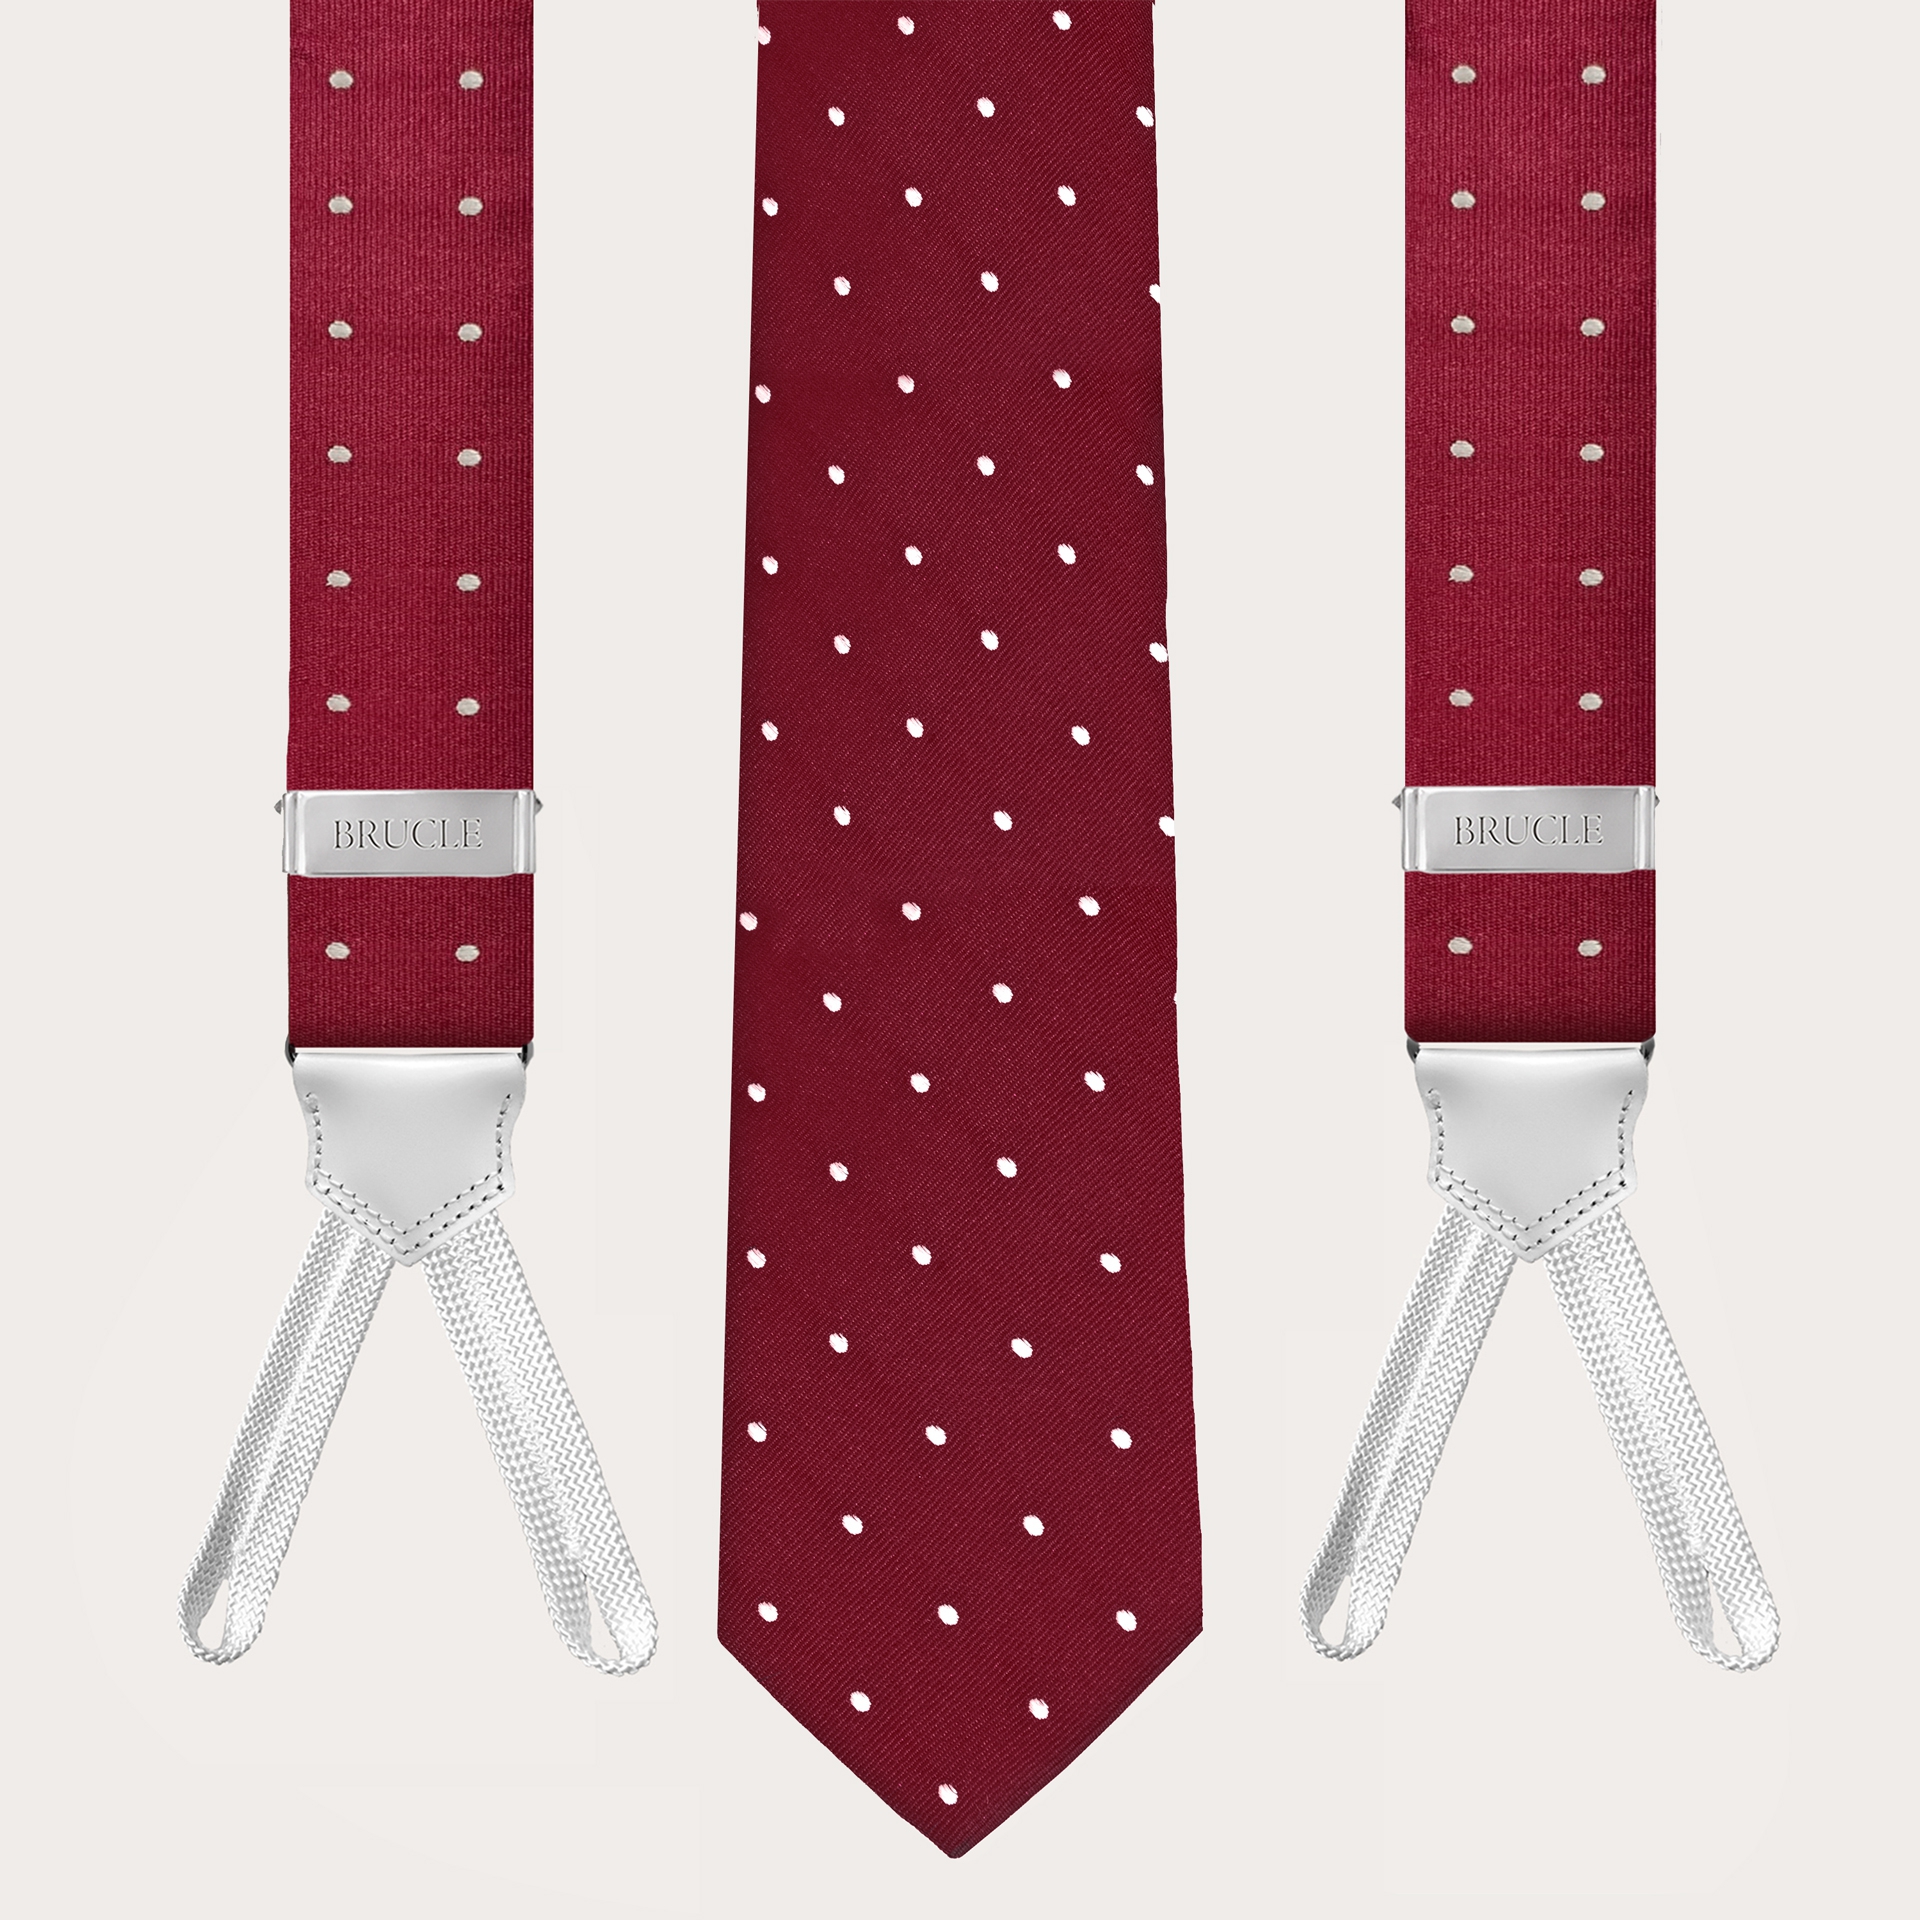 BRUCLE Bretelles et cravate coordonnées en jacquard de soie, bordeaux à pois